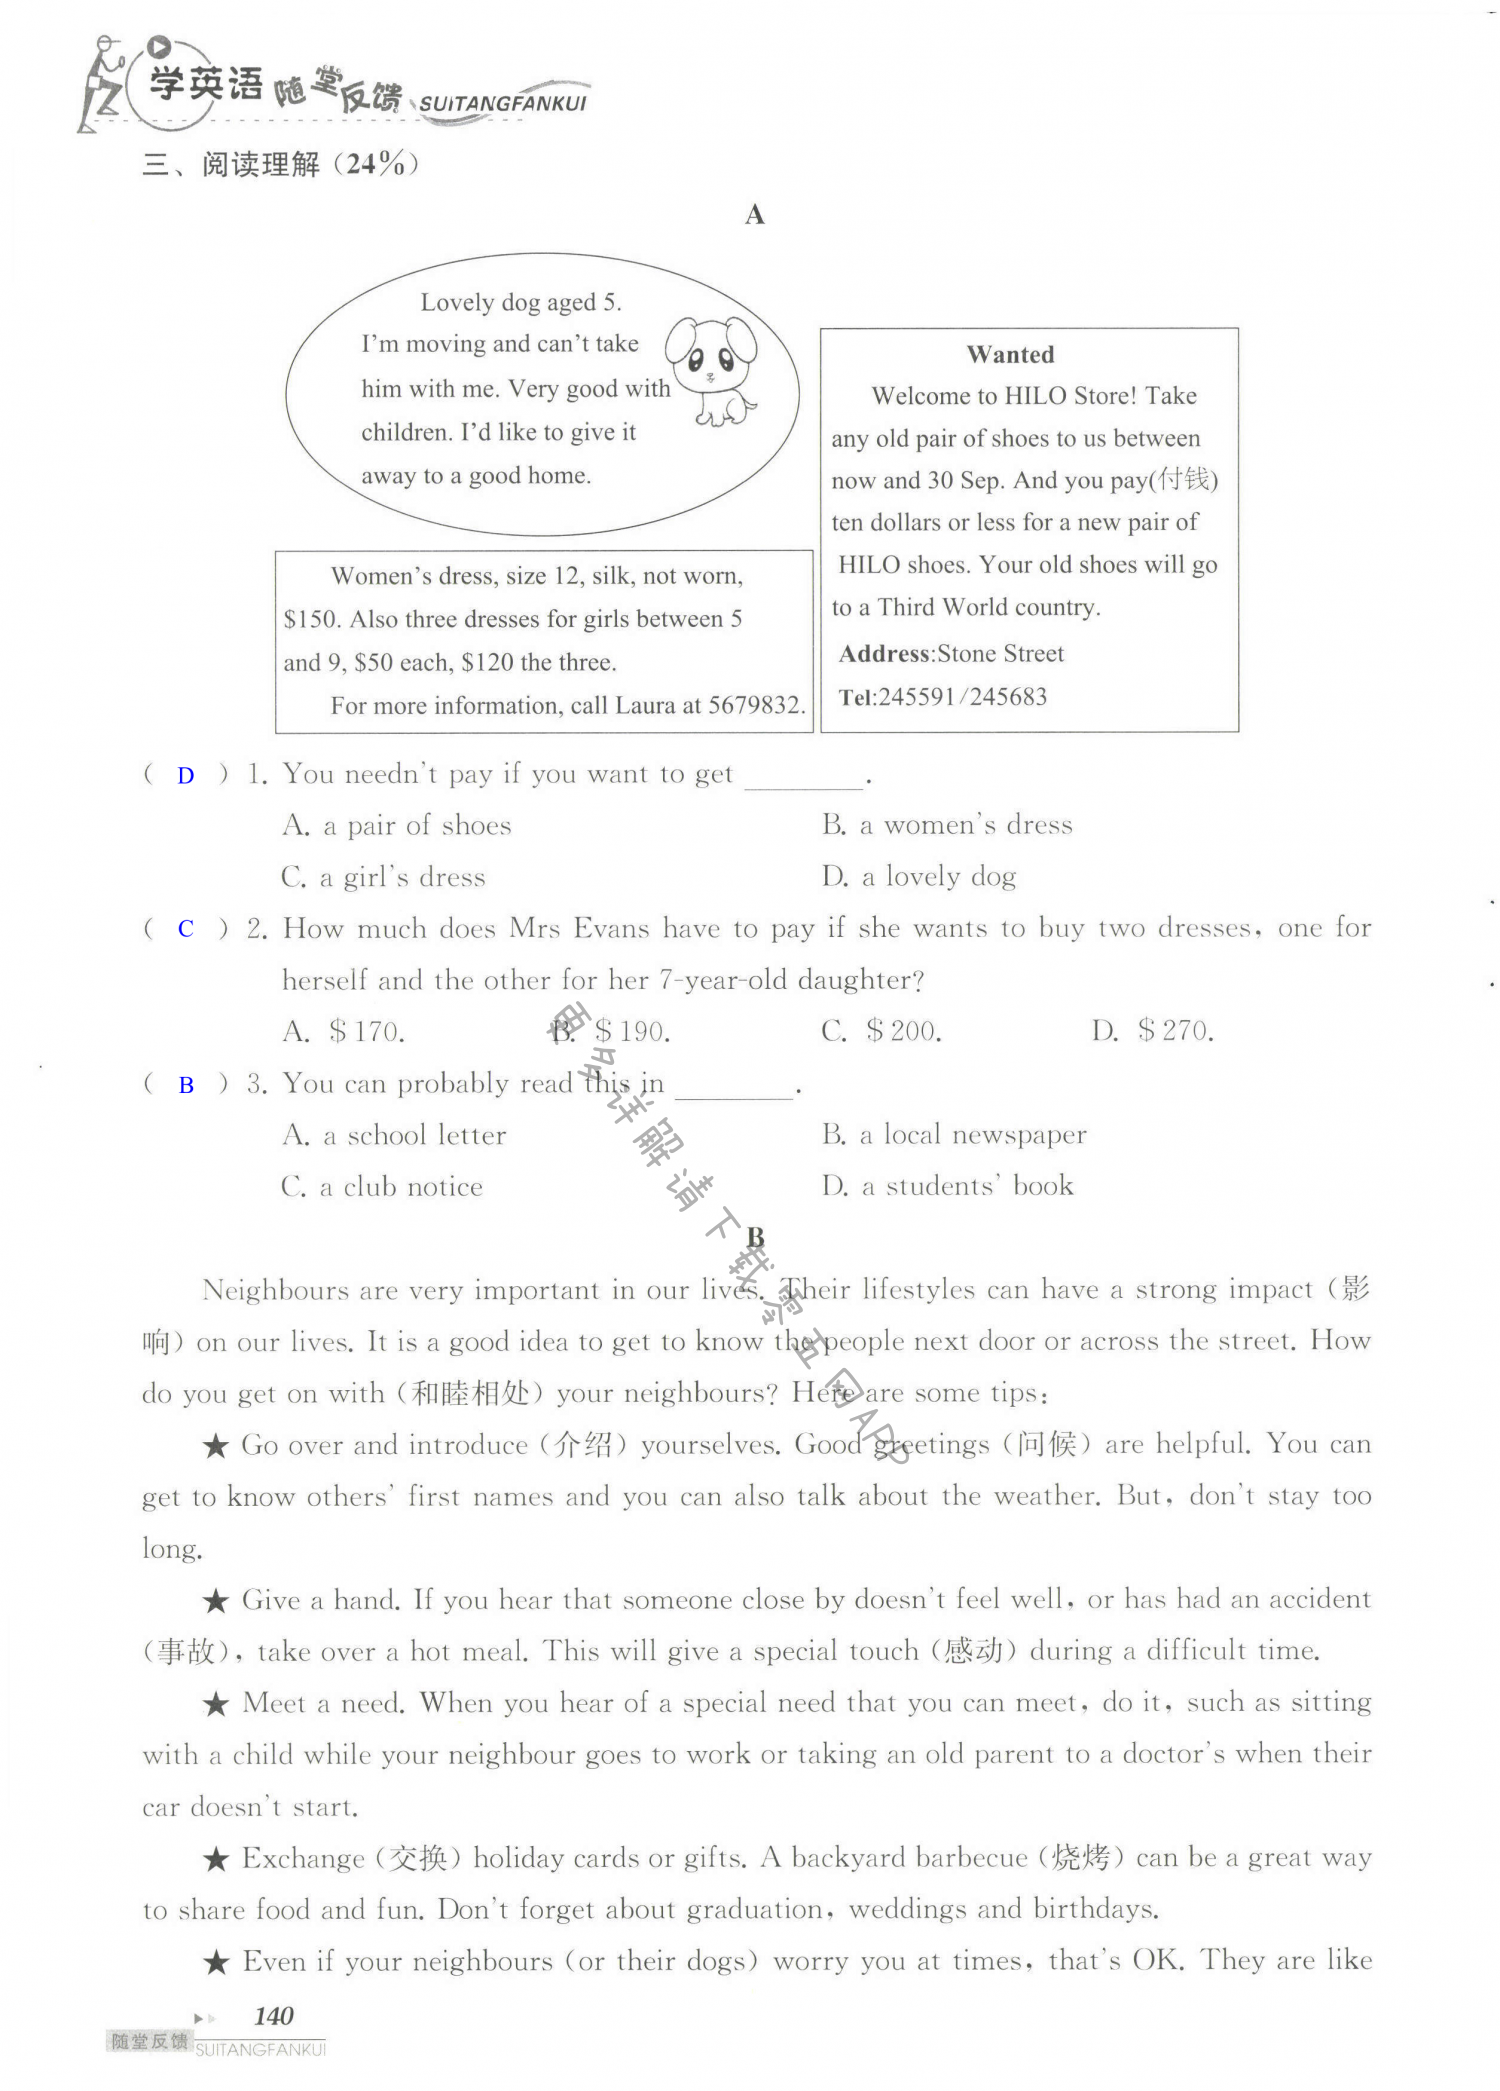 单元综合测试卷  Test for Unit 2 of 7B - 第140页